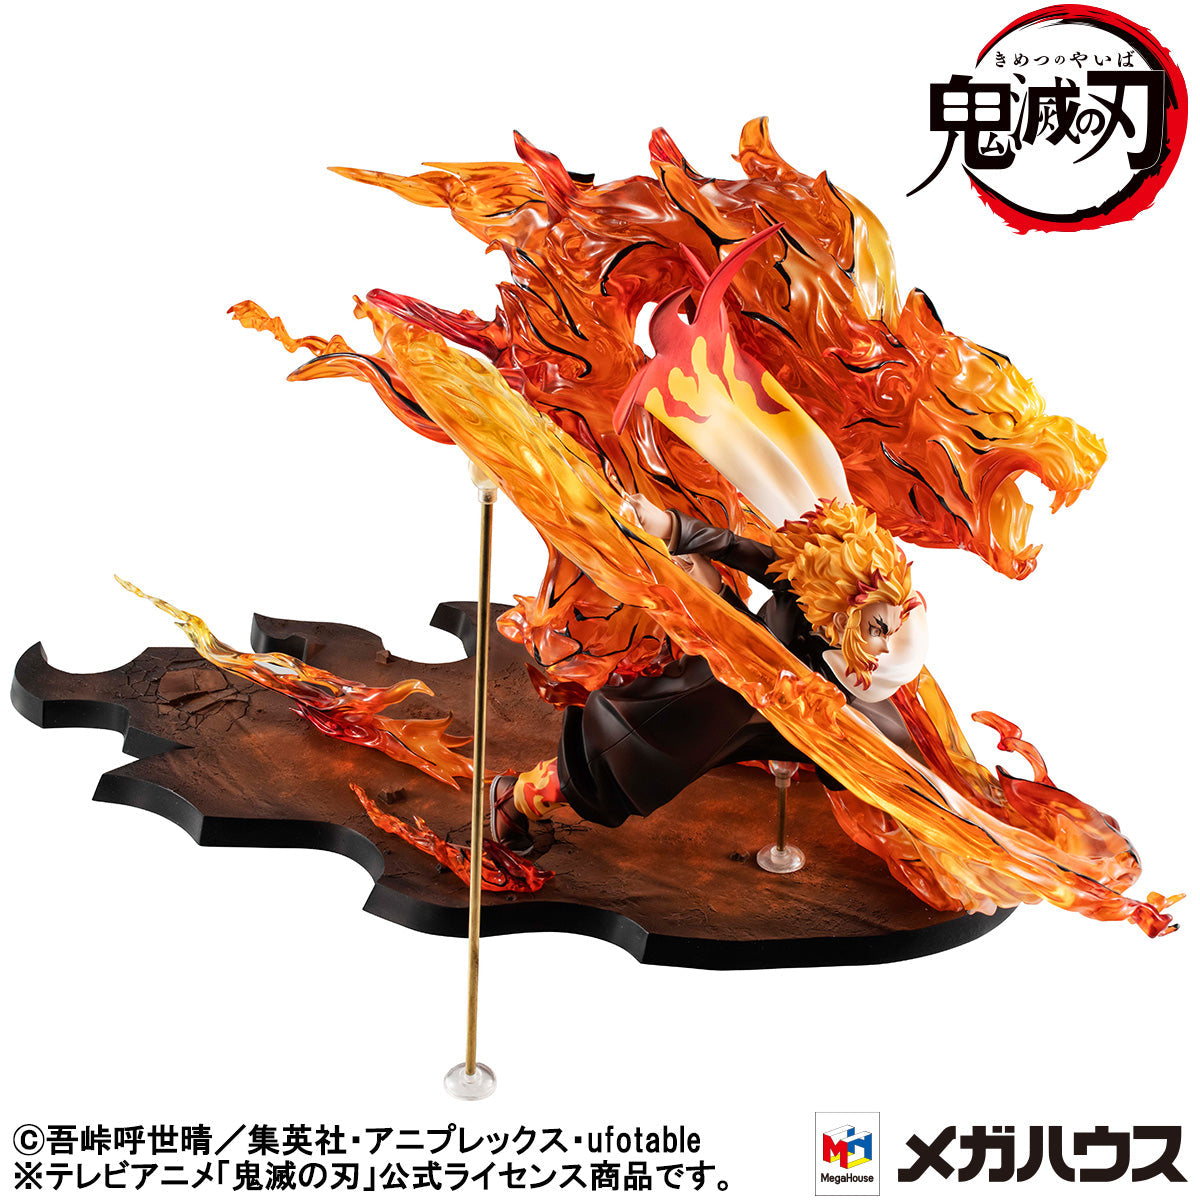 Demon slayer 2figures /Kimetsu no yaiba super premium figure Kyoudai no  kizuna